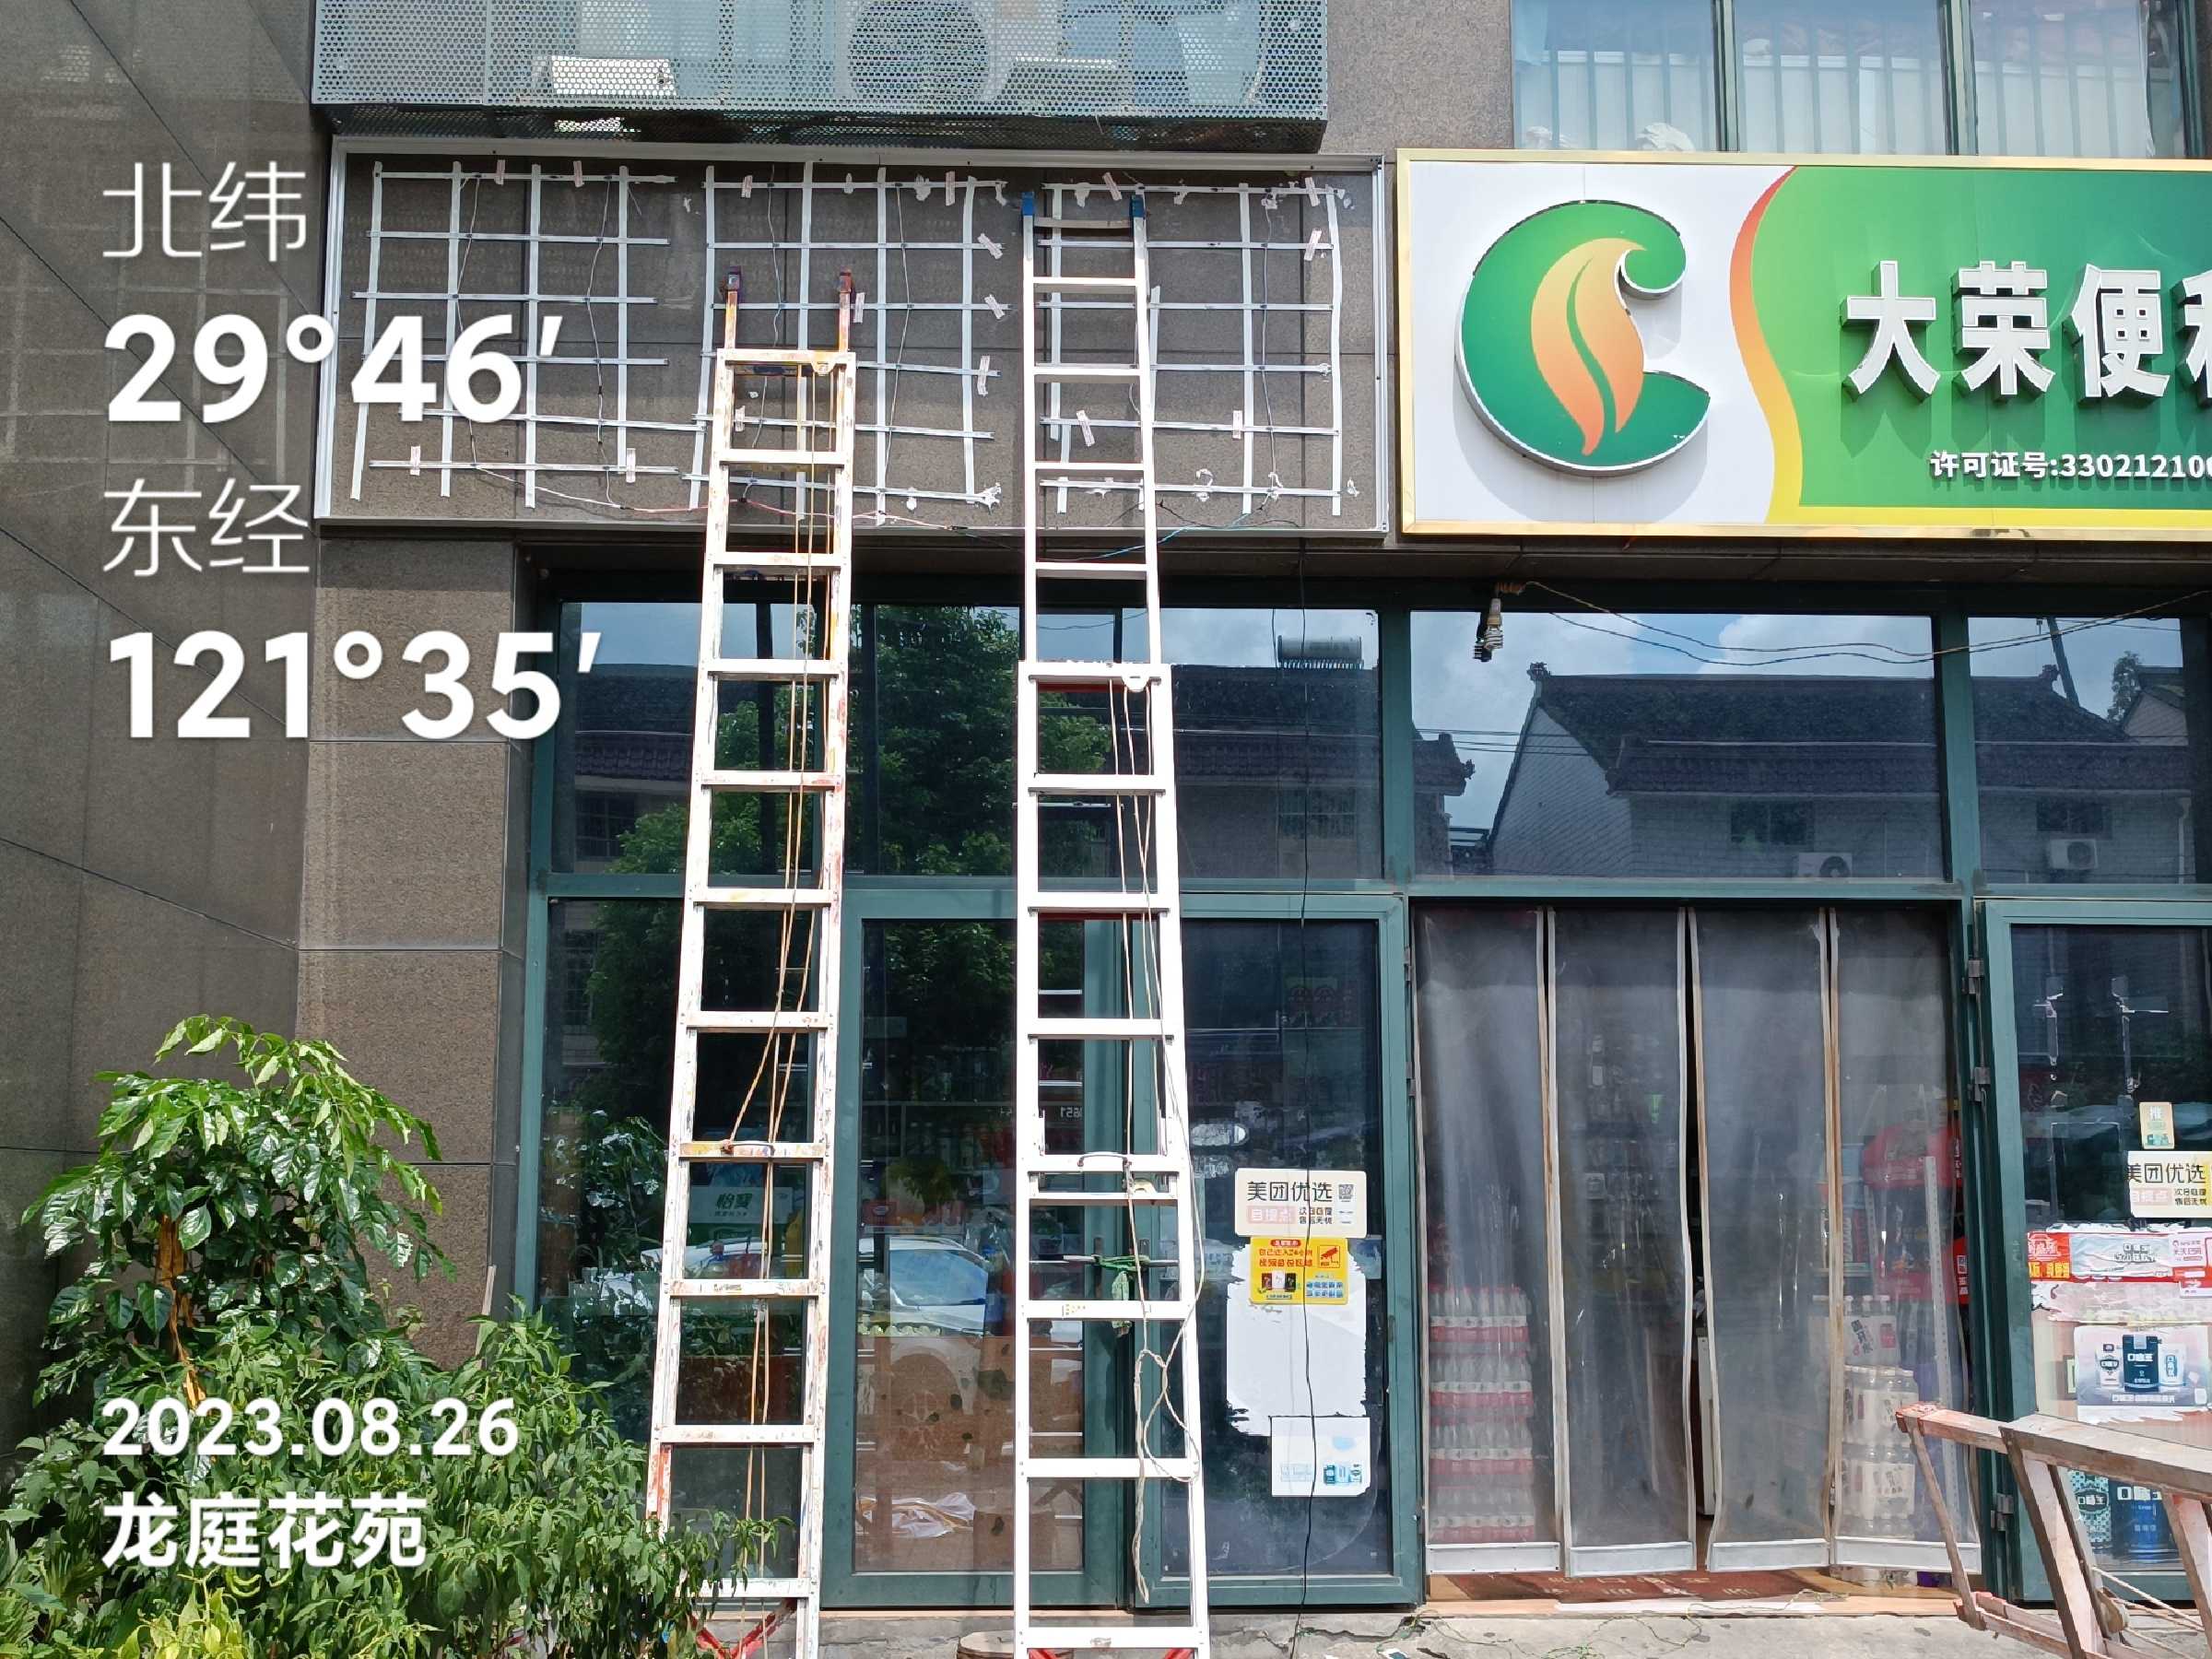 安阳文峰京瓷店招彩绘涂鸦河南孟州郁金香墙体广告的发展趋势谋事在人